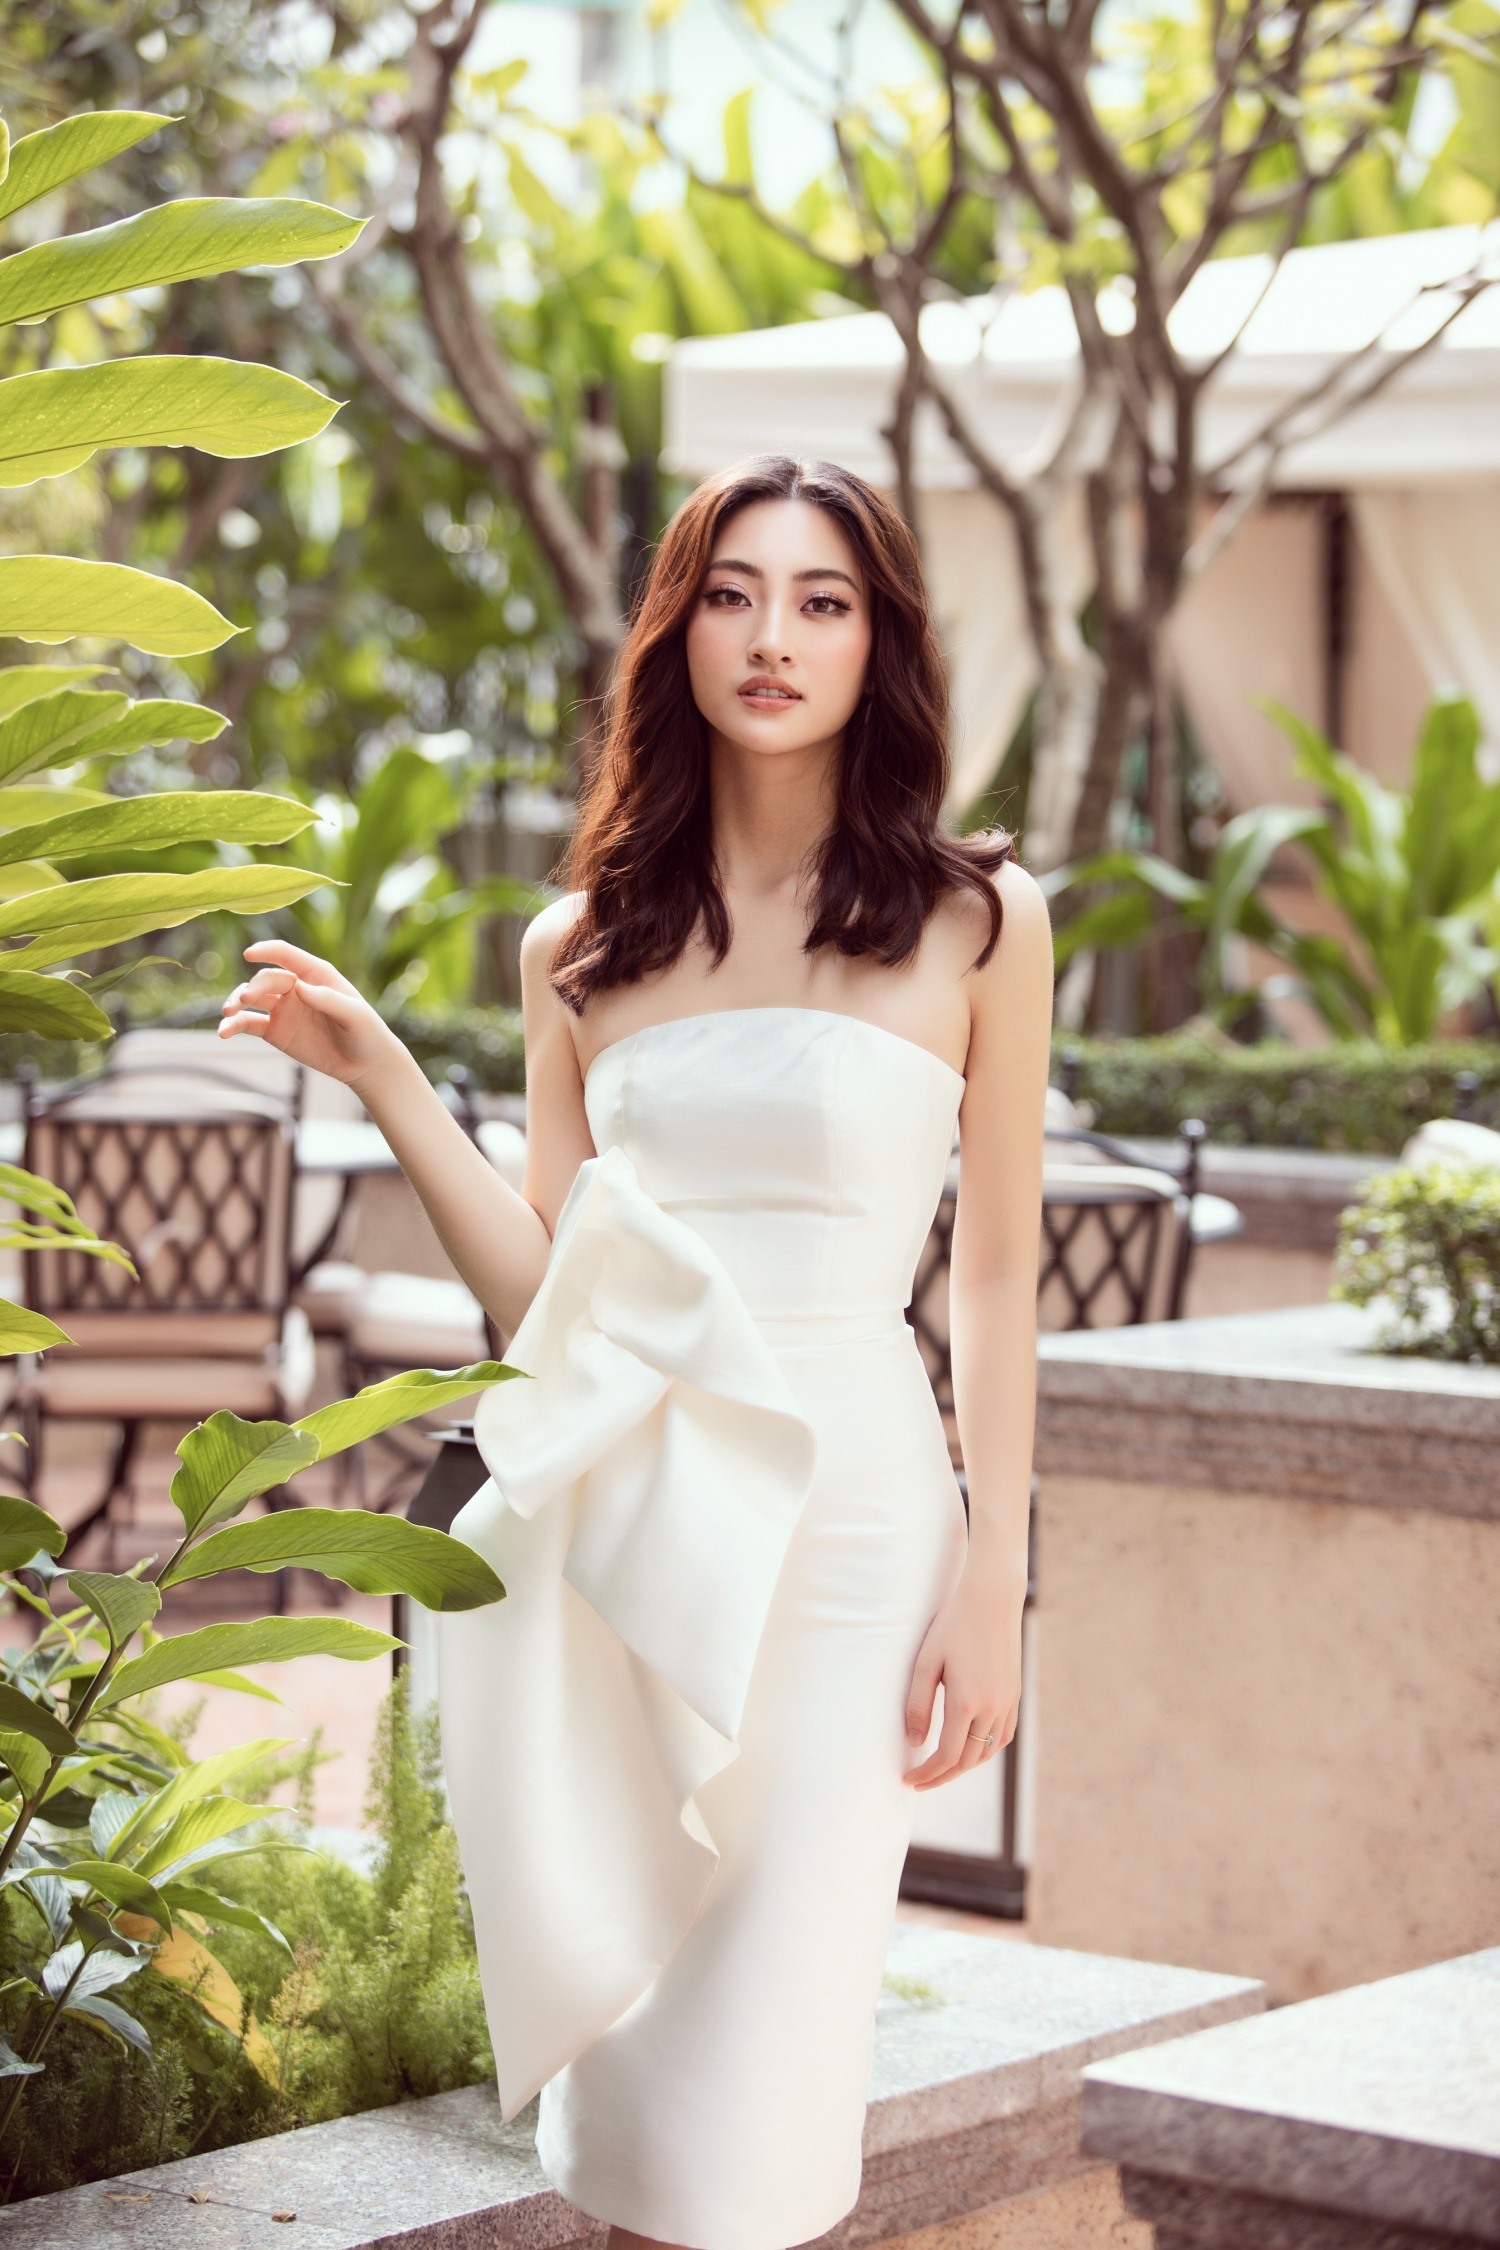 Khác với đàn chị, Lương Thuỳ Linh lại lựa chọn thiết kế đơn giản đến từ NTK Hà Thanh Huy. Chiếc váy trắng ôm sát body cách điệu ở phần hông đã giúp tôn lên đường cong quyến rũ. Ảnh: SV.